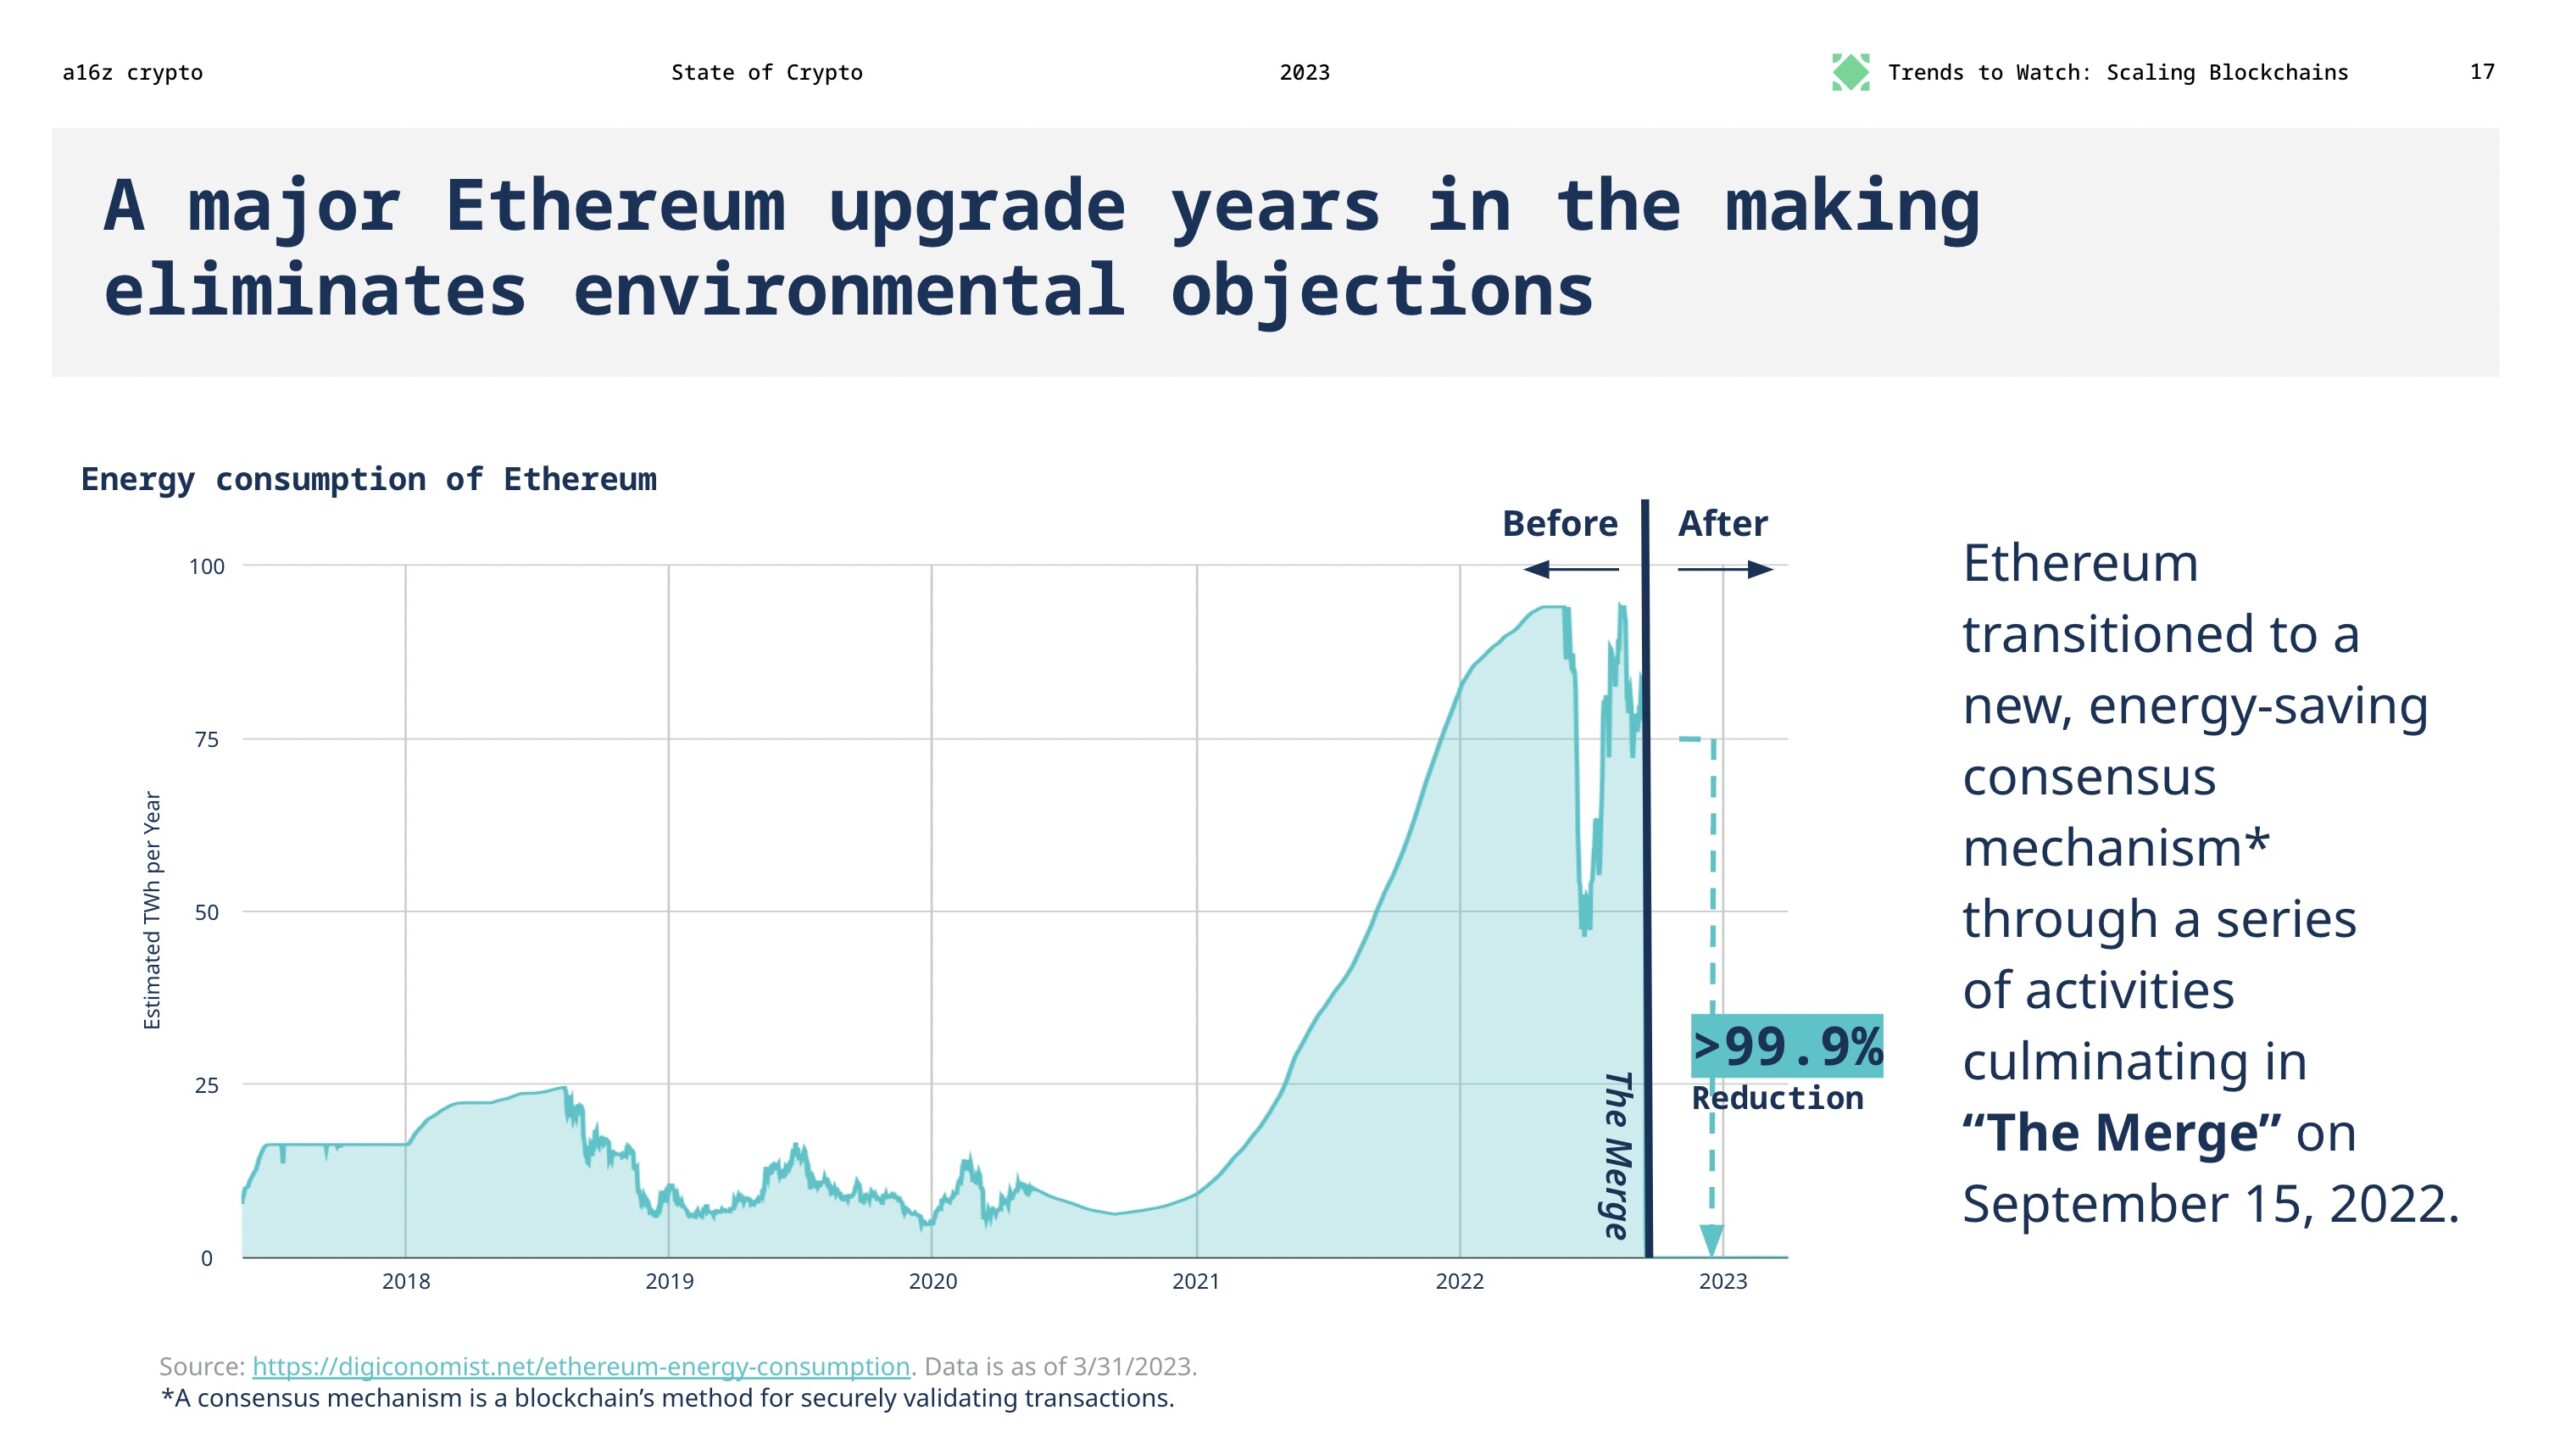 تعمل سنوات ترقية Ethereum الرئيسية على التخلص من الاعتراضات البيئية